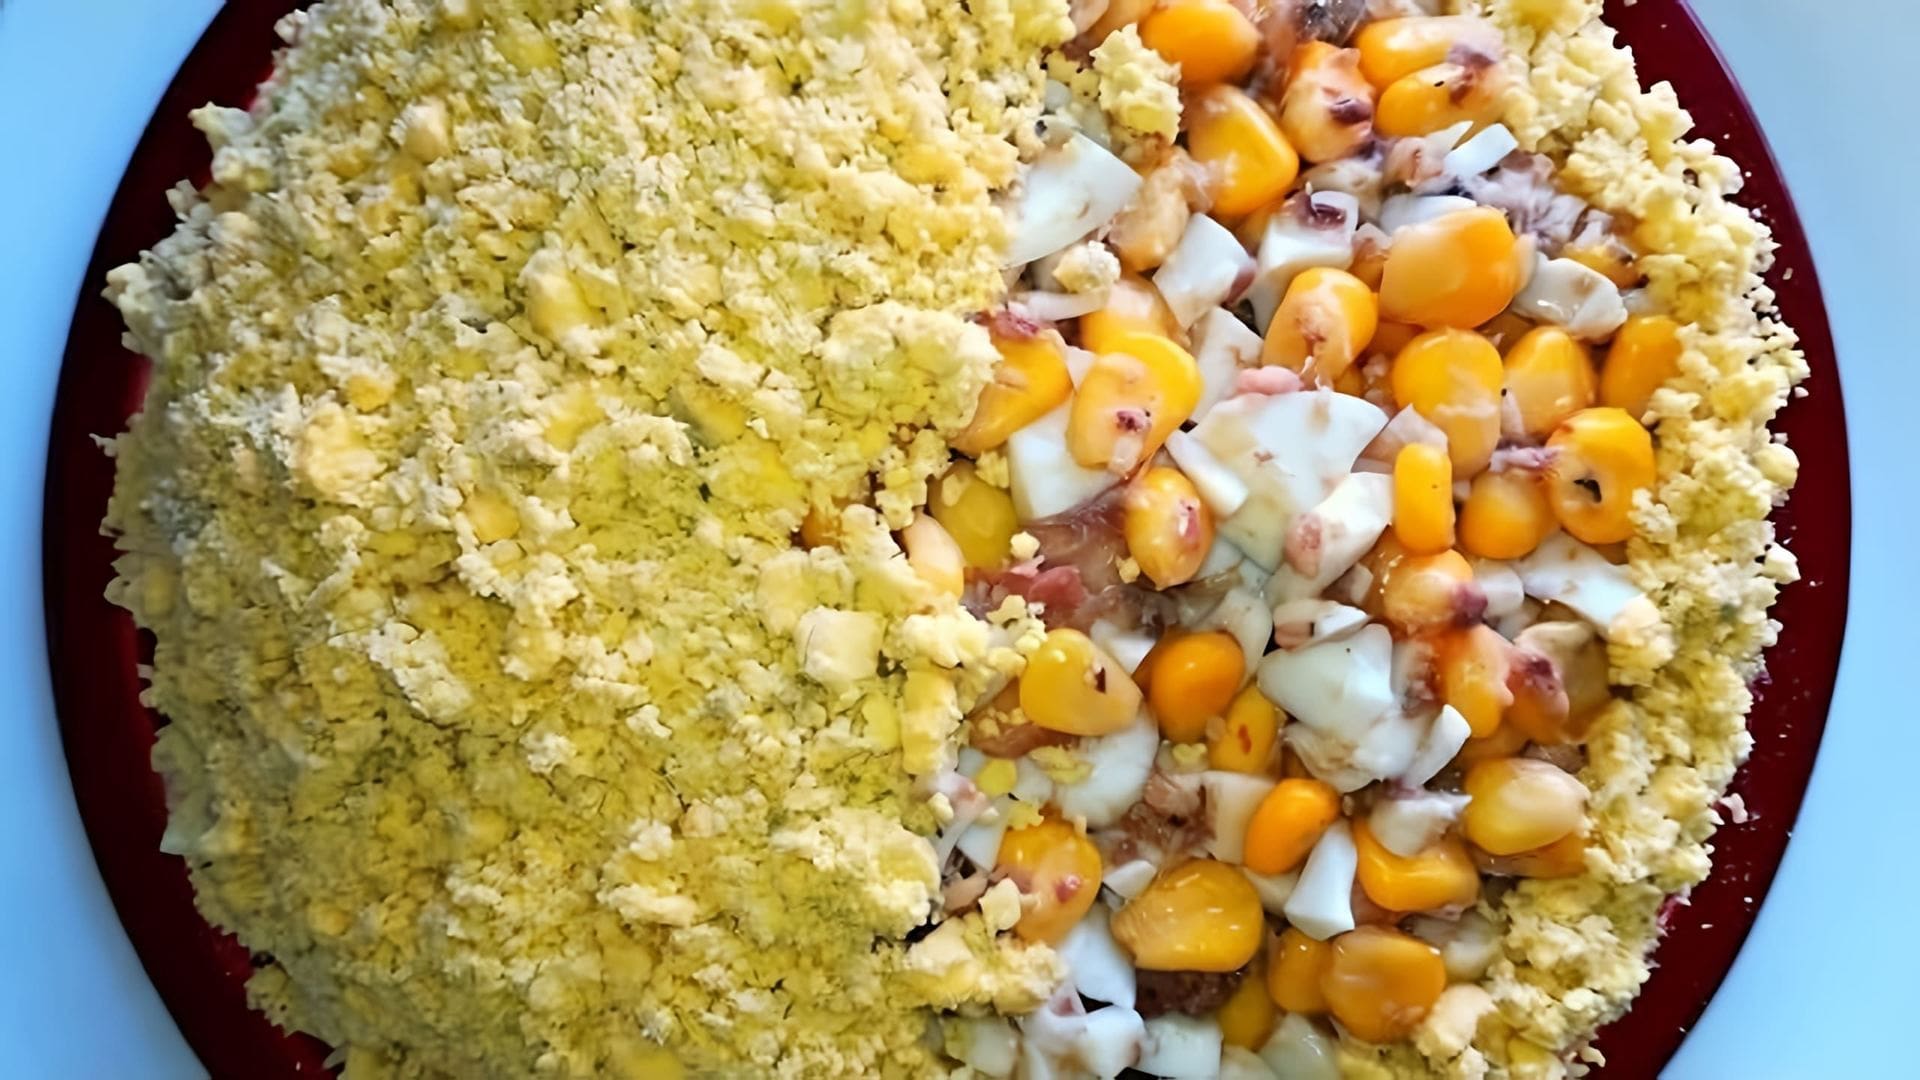 В этом видео демонстрируется процесс приготовления салата из рыбных консервов без использования майонеза